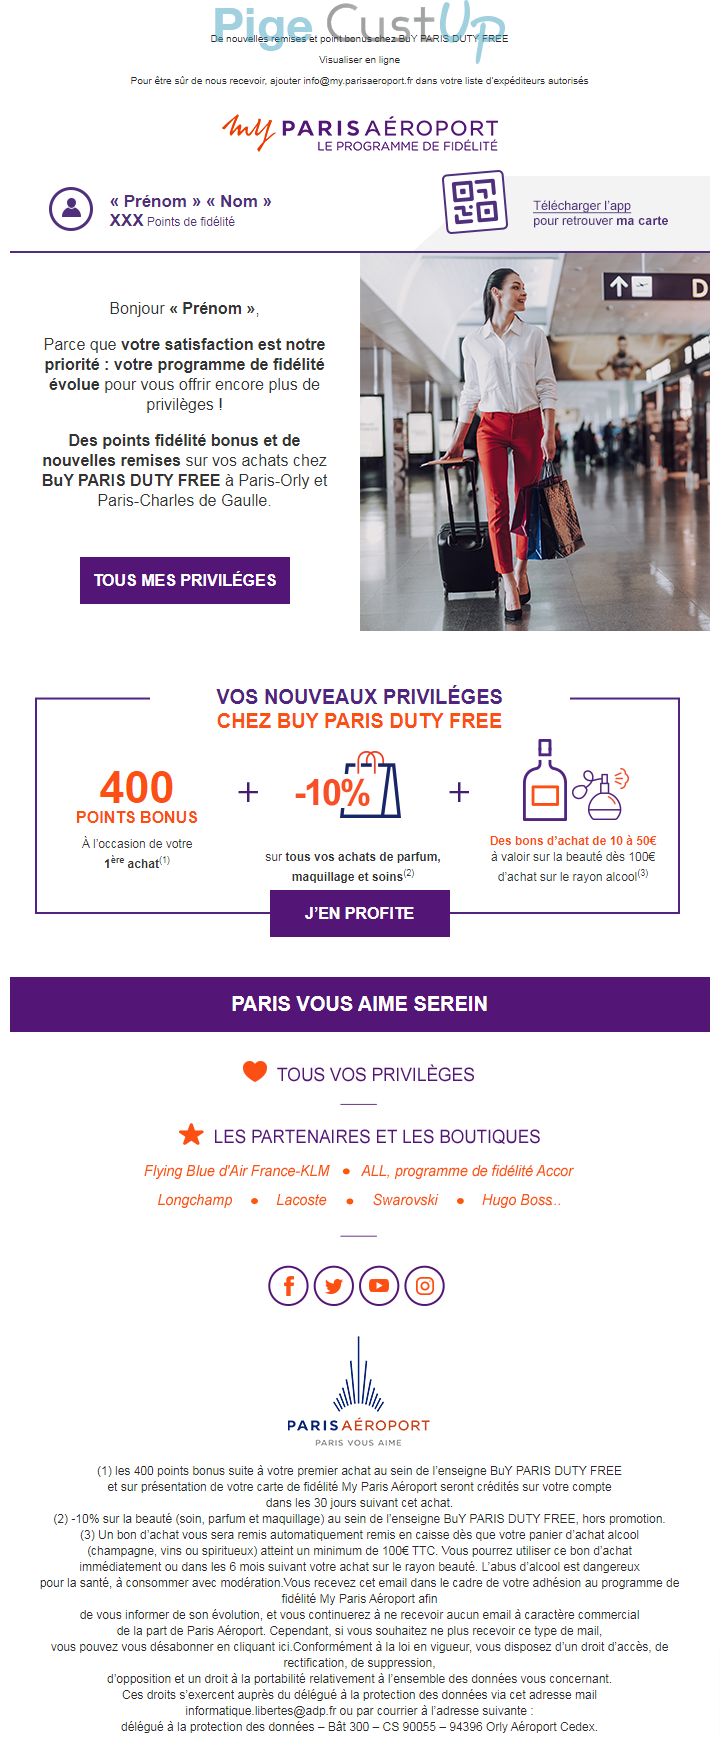 Exemple de Type de media  e-mailing - My Paris Aeroport - Marketing fidélisation - Animation / Vie du Programme de Fidélité